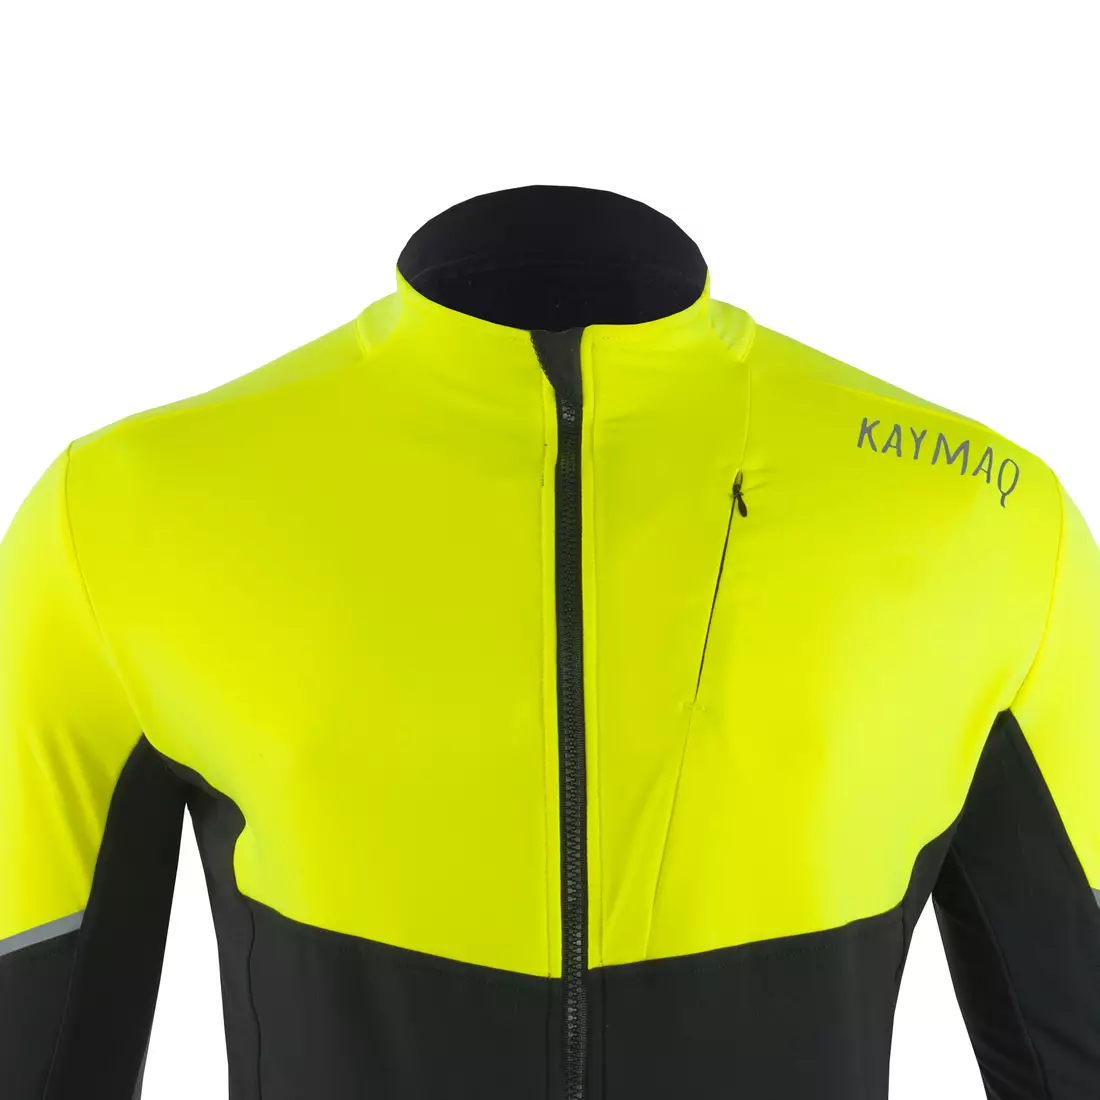 KAYMAQ KYQLS-001 hanorac de ciclism pentru bărbați fluo galben-negru